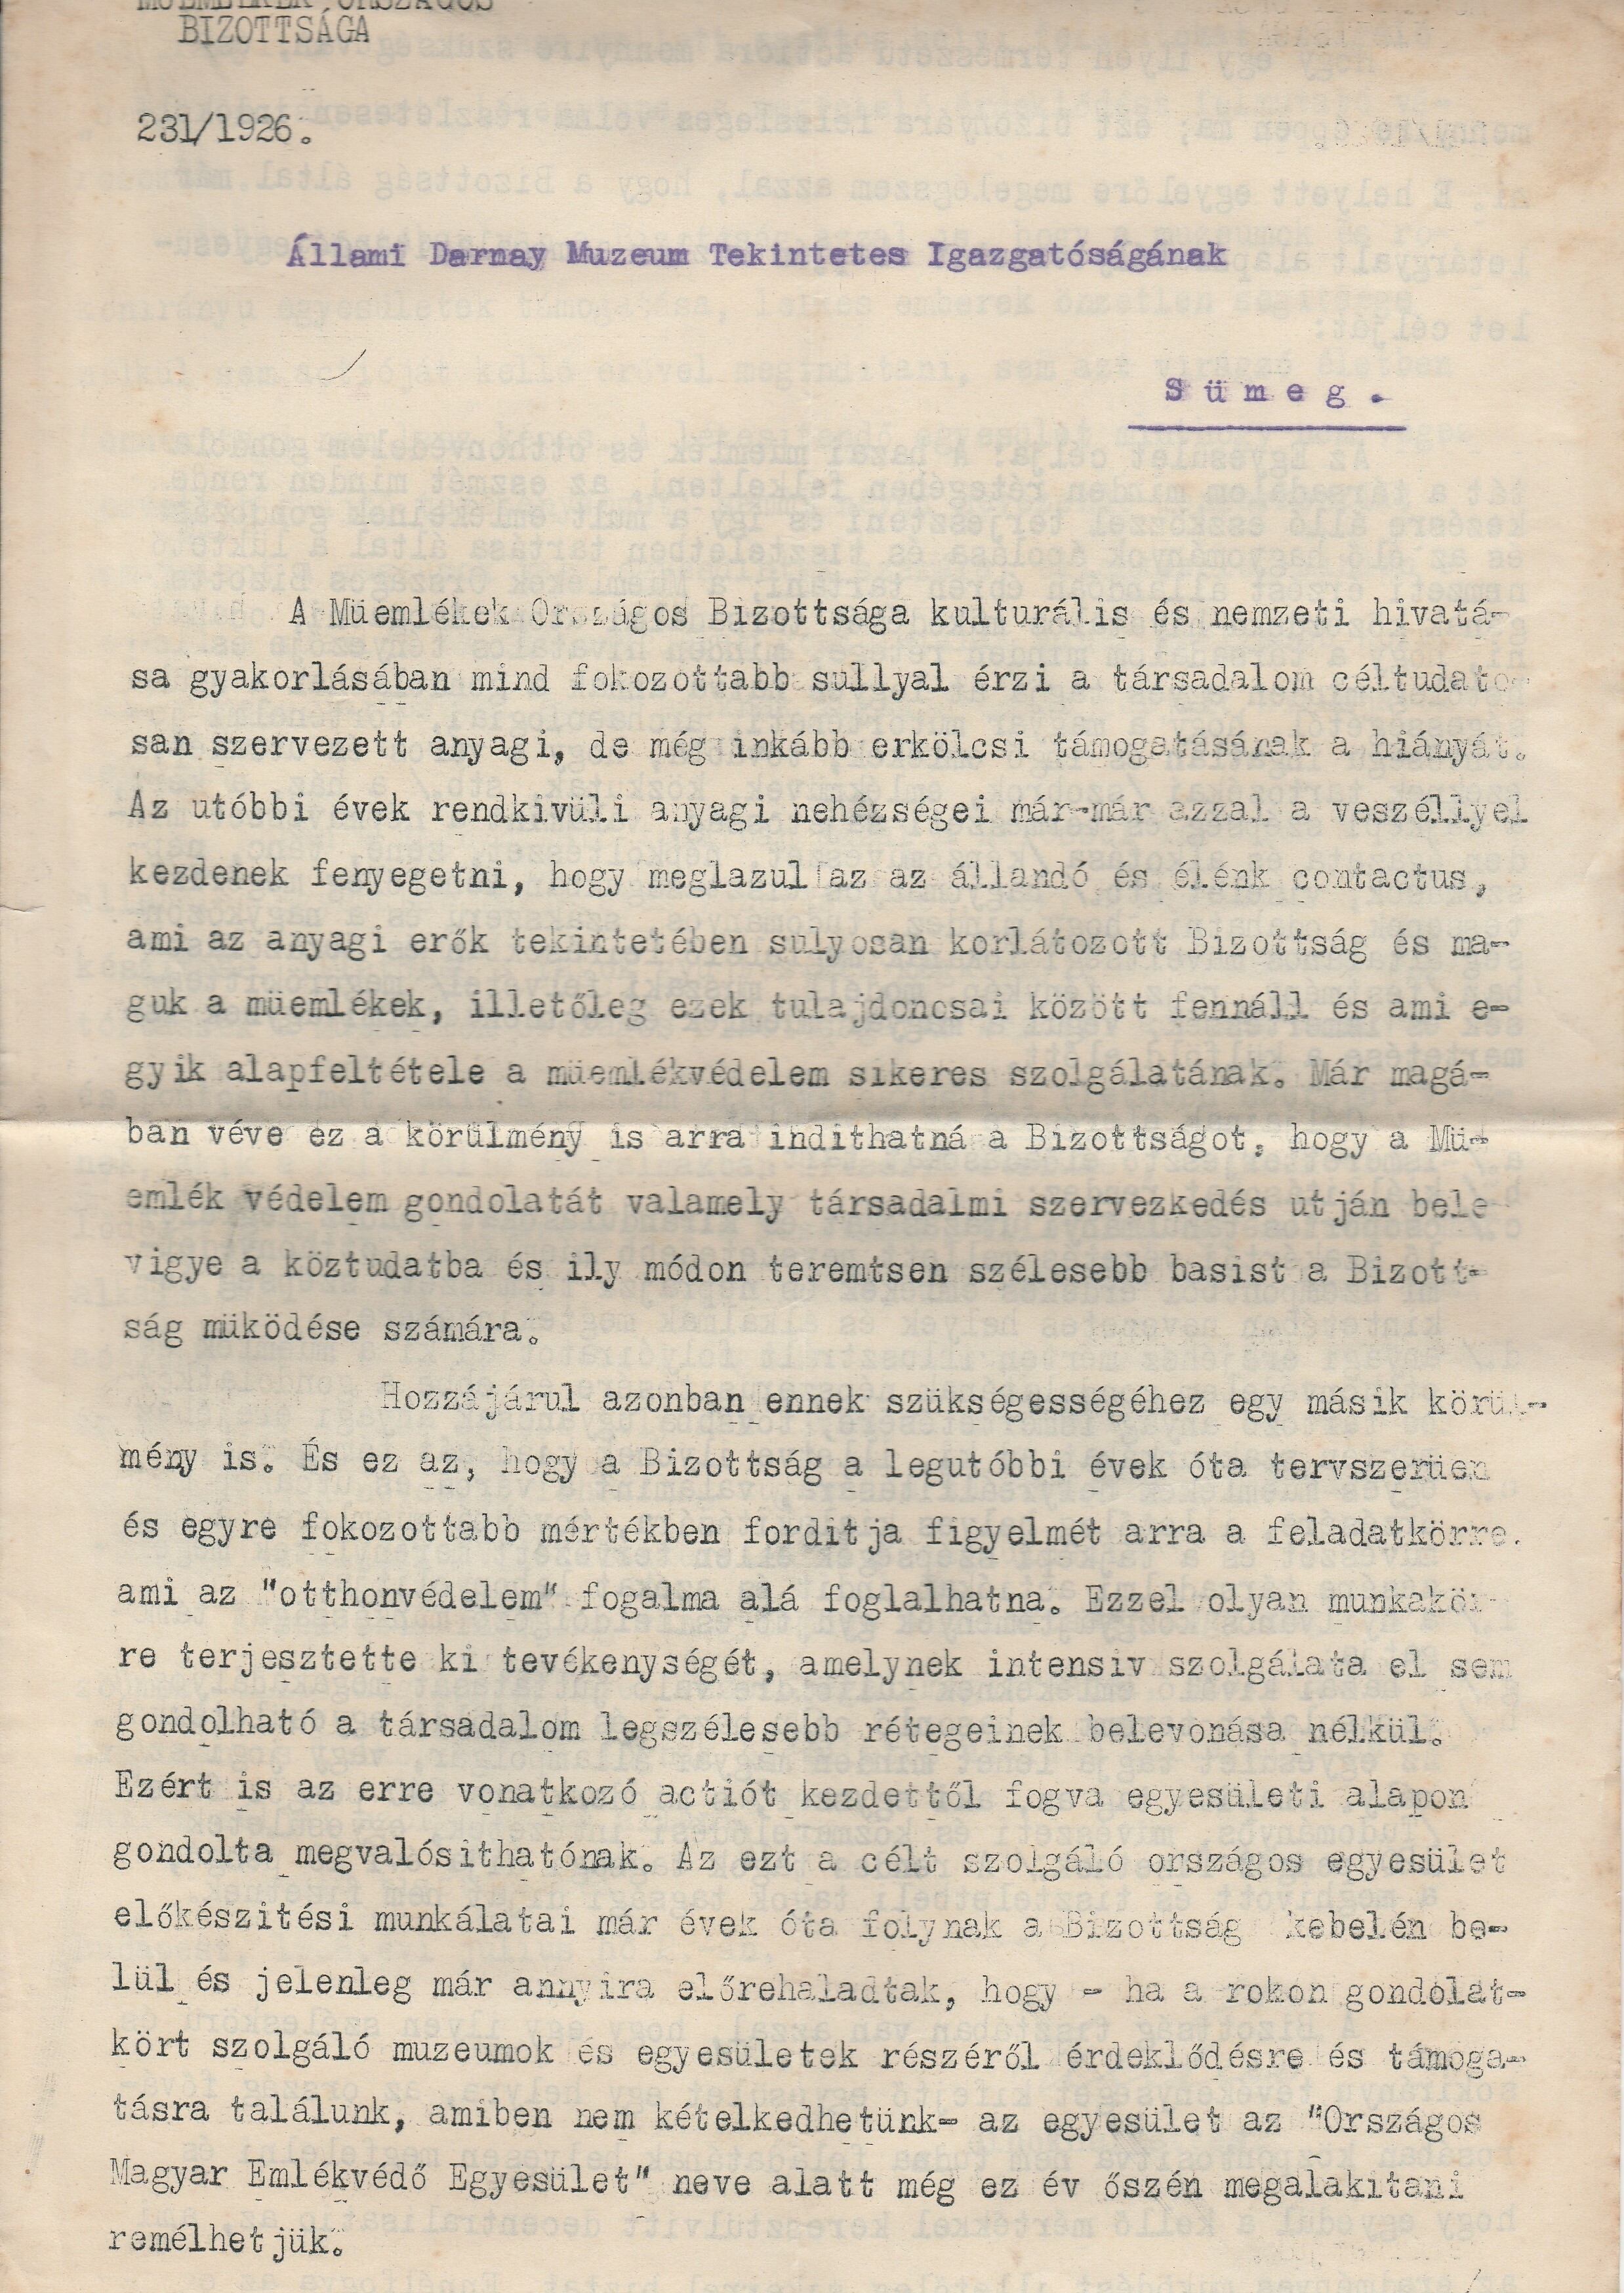 Felhívás az Országos Magyar Emlékvédő Egyesület megalakításával kapcsolatban (Tapolcai Városi Múzeum CC BY-NC-SA)